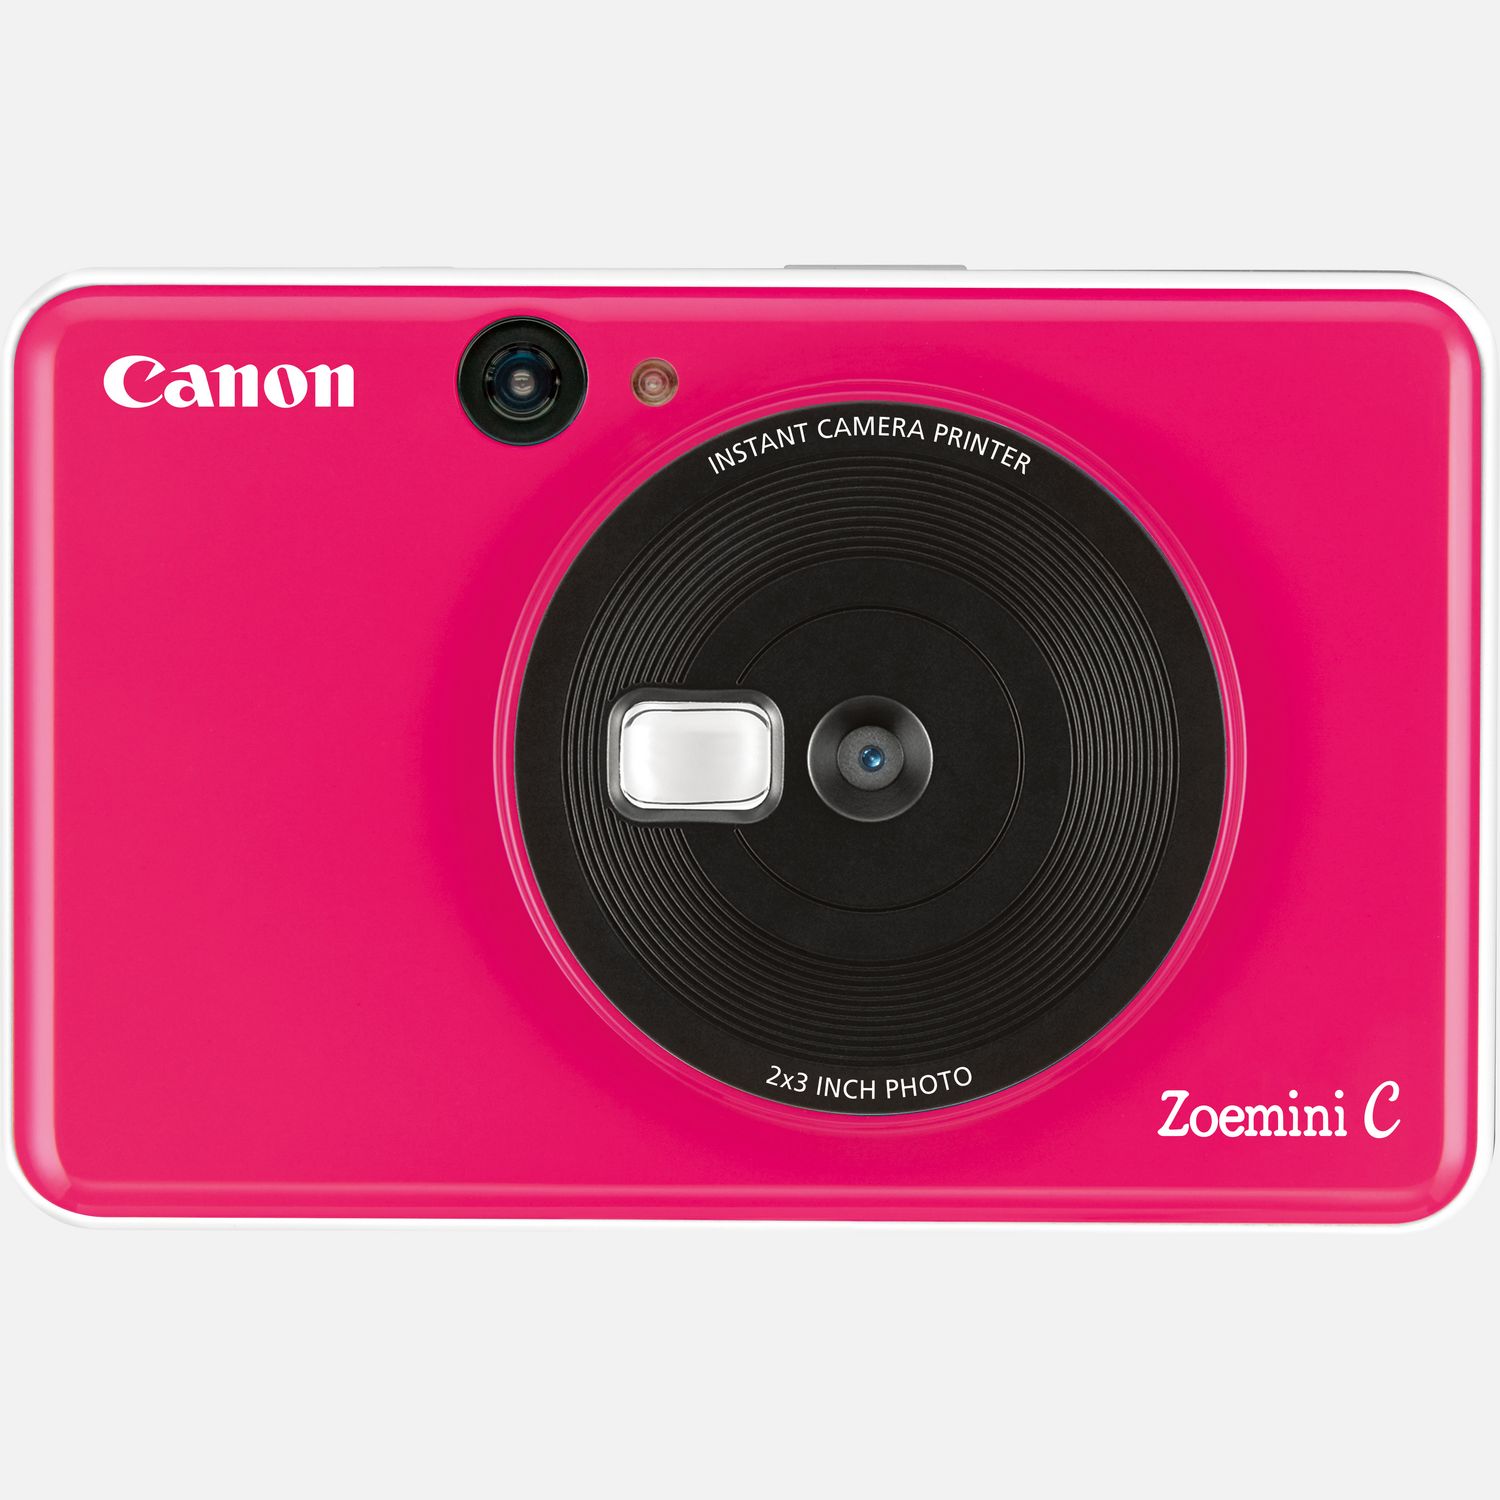 Der Canon Zoemini C ist die Lsung im Taschenformat fr lustige und schnelle Fotos  einfach lcheln und ein Selfie aufnehmen, das direkt als Foto-Sticker ausgedruckt wird. Klein und leicht passt er mhelos in die Hand- oder Hosentasche. Er verfgt ber einen Selfie-Spiegel, mit dem du gleich beim ersten Mal die perfekte Aufnahme machst. Die saubere, tintenfreie Zink-Technologie druckt sofort nach der Aufnahme farbenfrohe Aufkleber  und wenn du deine Schnappschsse sicher aufbewahren mchtest, kannst du sie auf einer Micro SD-Karte speichern. Nach dem Druck kannst du die Fotos von Freunden aufbewahren, sie als Andenken verschenken oder die Folie von der Kleberckseite abziehen, um deinem Handy oder einer Wand eine persnliche Note zu verleihen.  Vorteile      Schlanke und kompakte 2-in-1-Technologie  Fotos aufnehmen und sofort drucken          Einfach berall hin mitnehmen! Der Canon Zoemini C passt in eine Hand und wiegt nur ca. 170 g          Mit dem vorn angebrachten Spiegel kannst du deine Pose berprfen und den Moment mit der 5-Megapixel-Kamera festhalten          Dank der tintenfreien Zink-Technologie, bei der alles ganz einfach und sauber zugeht, erhltst du wunderschne wischfeste, reifeste und wasserabweisende Drucke mit 314 x 500 dpi          Nach dem Drucken lassen sich die Sticker berall aufkleben oder an andere weitergeben. Bis zu 10 Blatt Zink-Fotopapier mit Kleberckseite im Format 5 x 7,5 cm passen in die Sofortbildkamera mit Mini-Fotodrucker  damit kannst du deine Fotos berall hin kleben          Und zum Speichern der Aufnahmen kannst du eine Micro SD Karte in den entsprechenden Slot des Canon Zoemini C einsetzen          4 Farben stehen zur Auswahl, so dass du die Sofortbildkamera mit Mini-Fotodrucker ganz nach deinem Stil auswhlen kannst  Bubblegum Pink, Bumblebee Gelb, Mintgrn und Seaside Blau          Lieferumfang       Canon Zoemini C Sofortbildkamera und Mini-Fotodrucker, Bubblegum Pink         USB-Kabel         Kurzanleitung         Canon Zink Fotopapier (10 Blatt) + 1 SMARTSHEET         Handschlaufe              Technische Daten              Zink Drucktechnologie                Leichtes Design (ca. 170 Gramm)                314 x 500 dpi Auflsung                10-Blatt-Kapazitt (Zink 5 x 7,5 cm Fotopapier)                5-Megapixel-Kamera                Micro SD-Speicherkarte          Alle technischen Daten zeigen